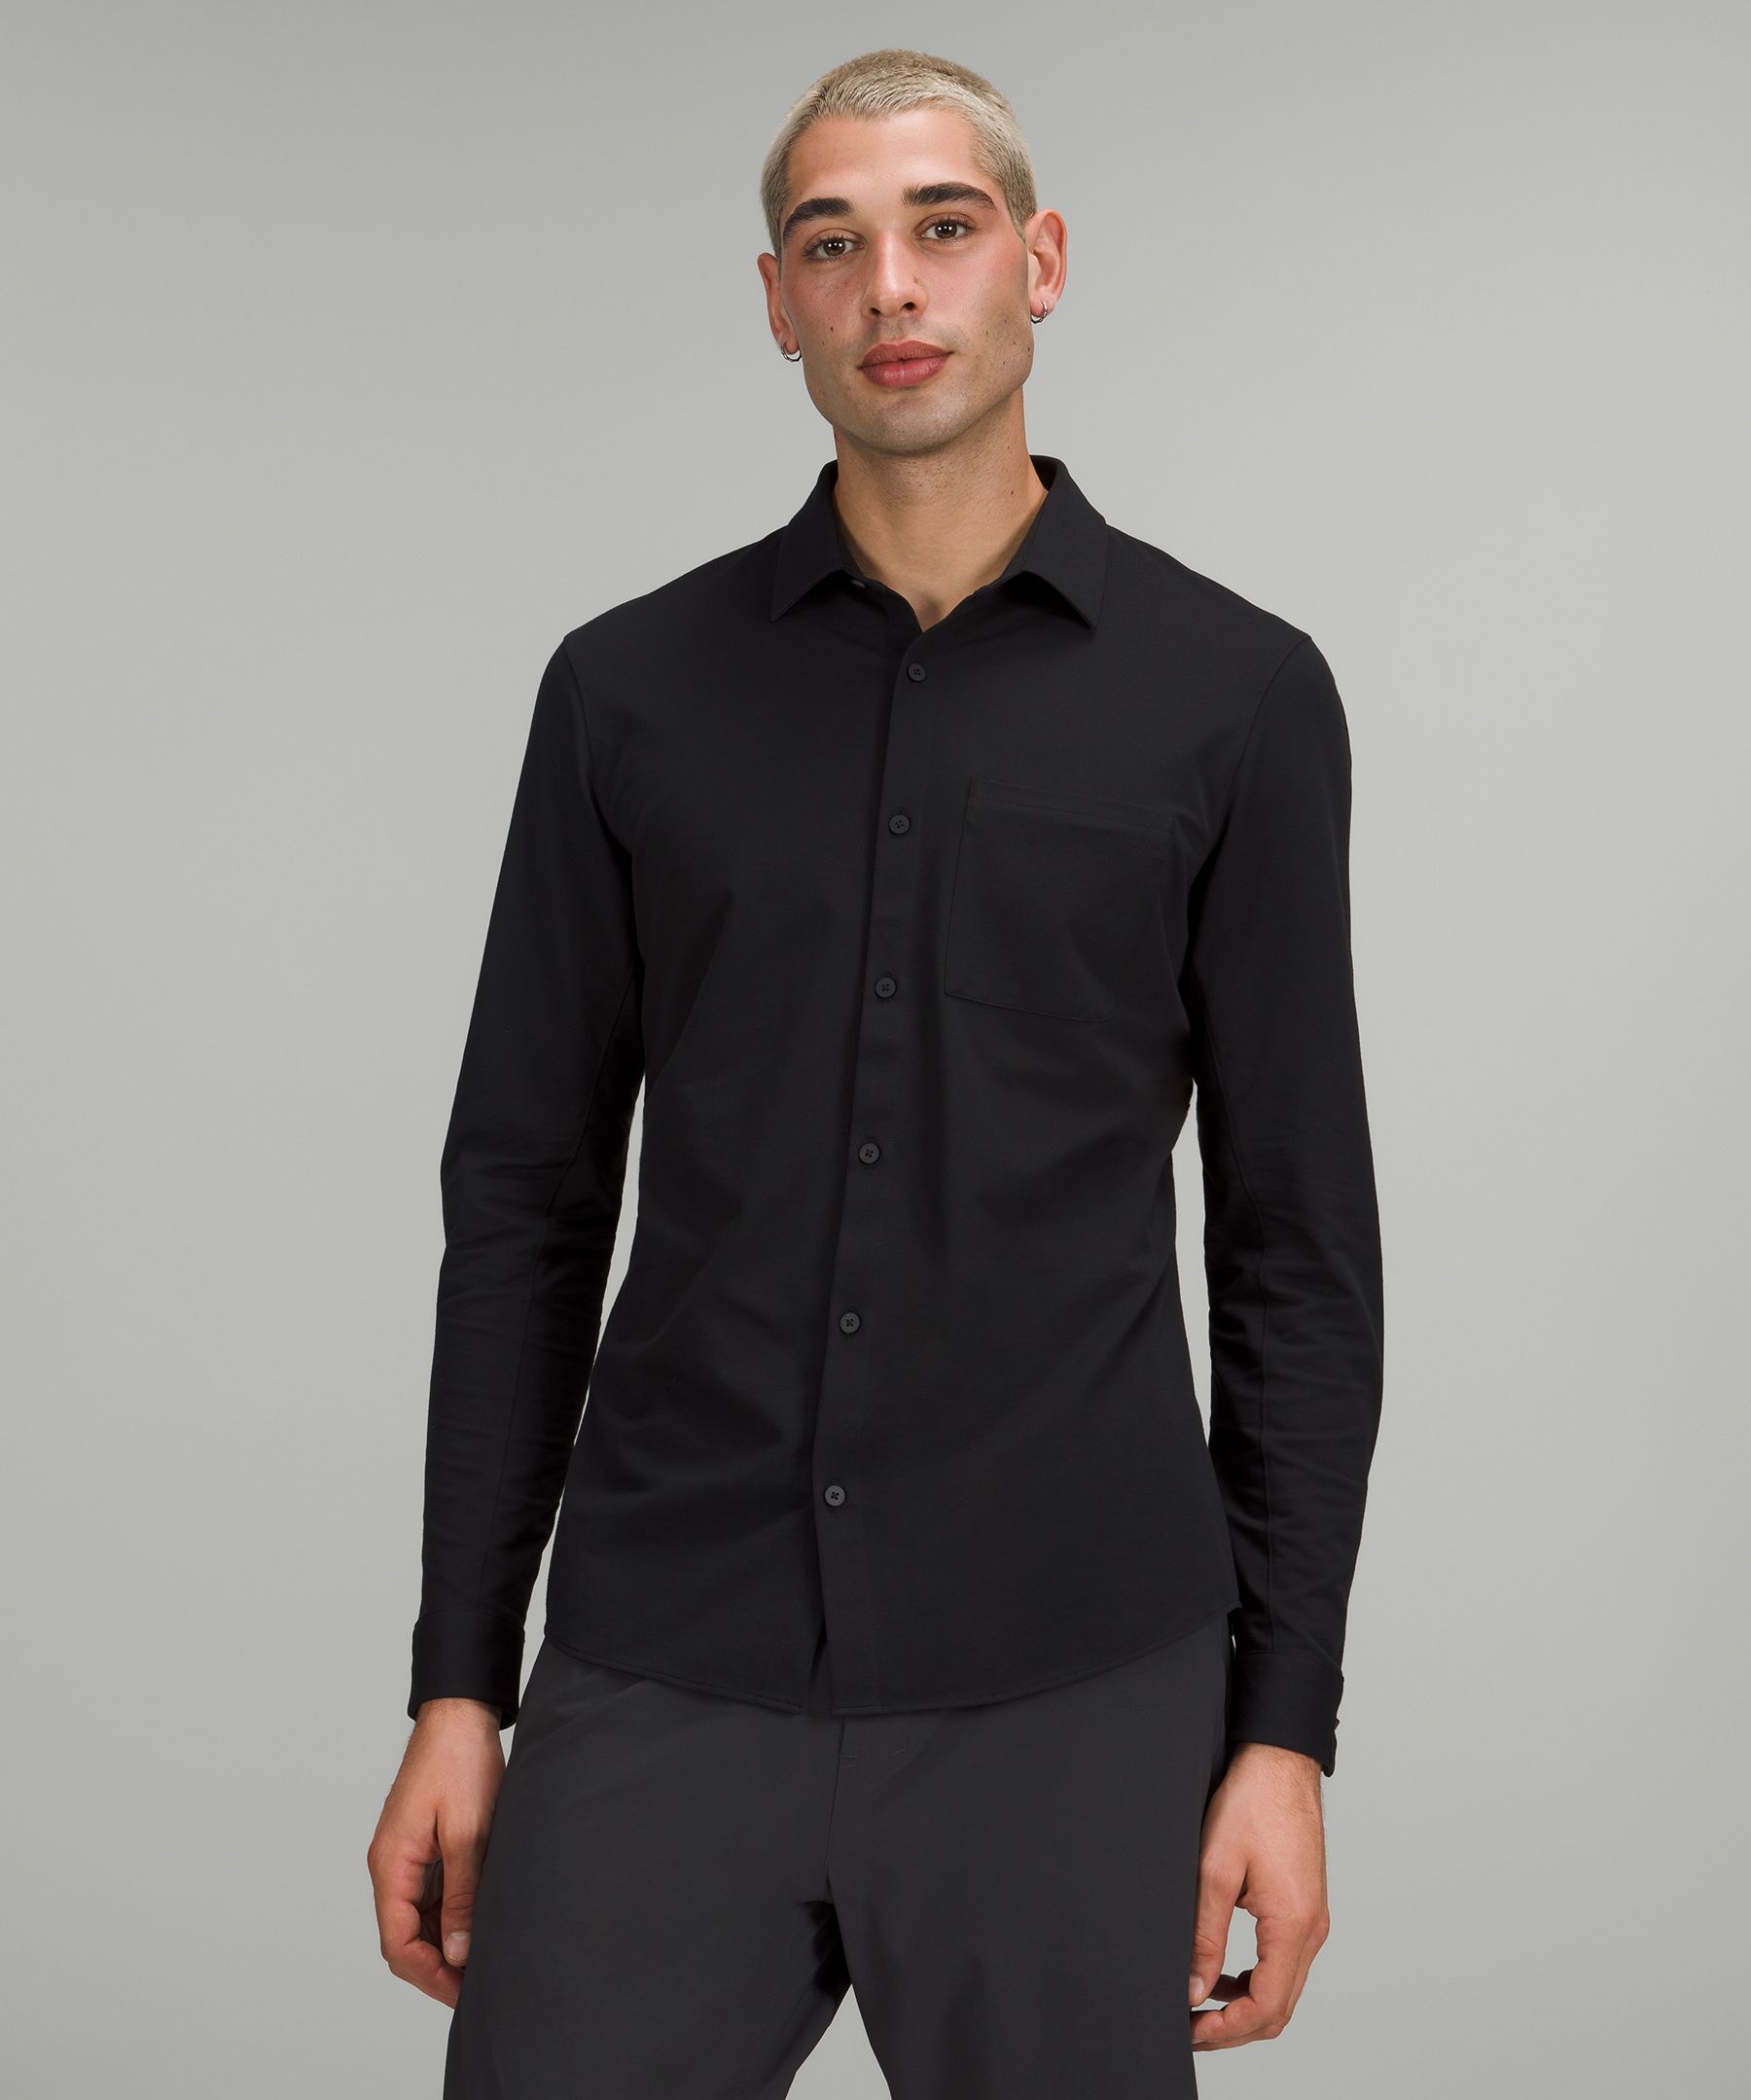 lululemon black shirt